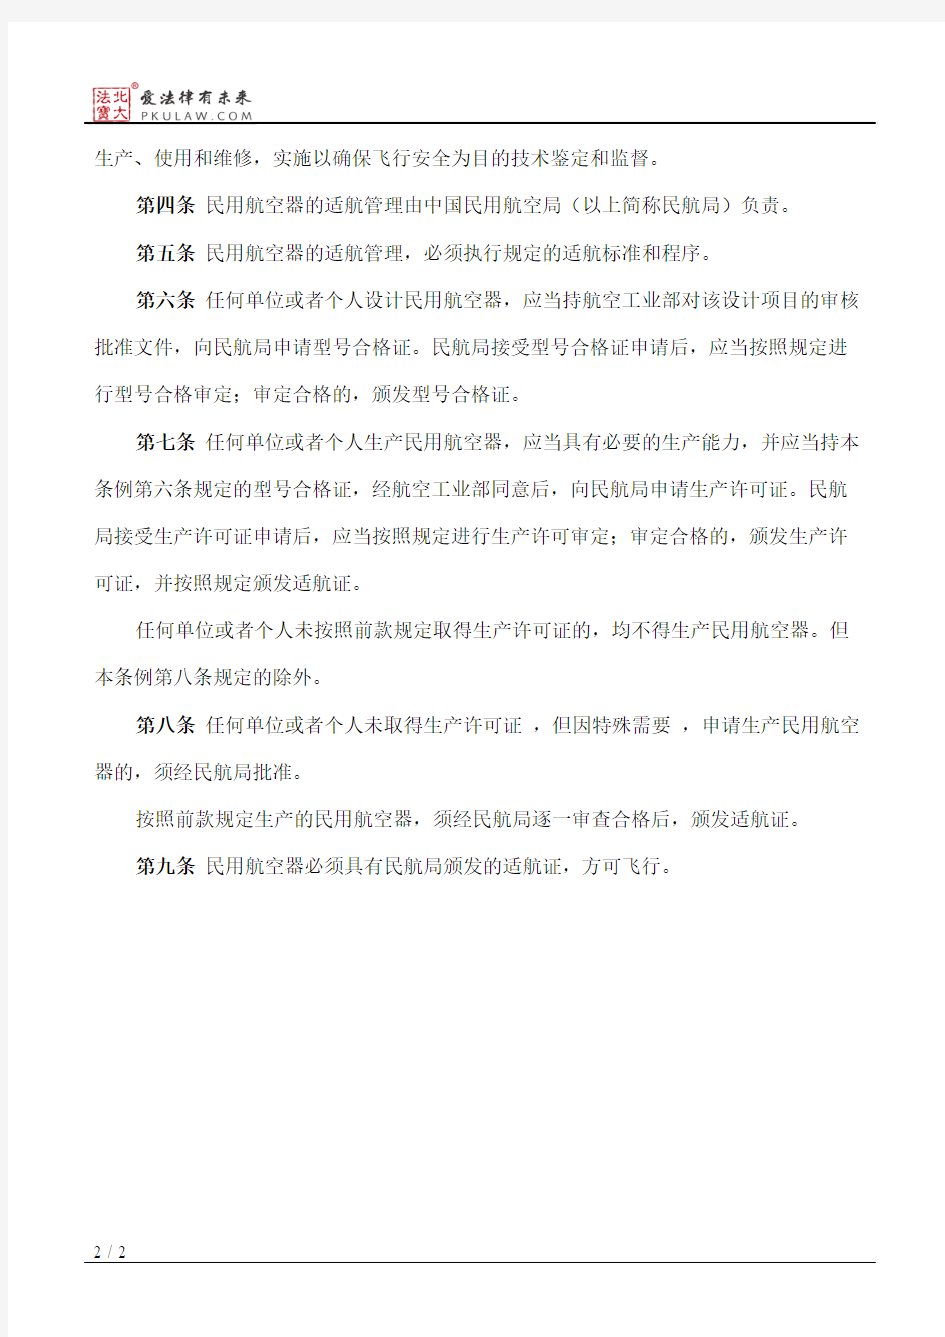 中华人民共和国民用航空器适航管理条例